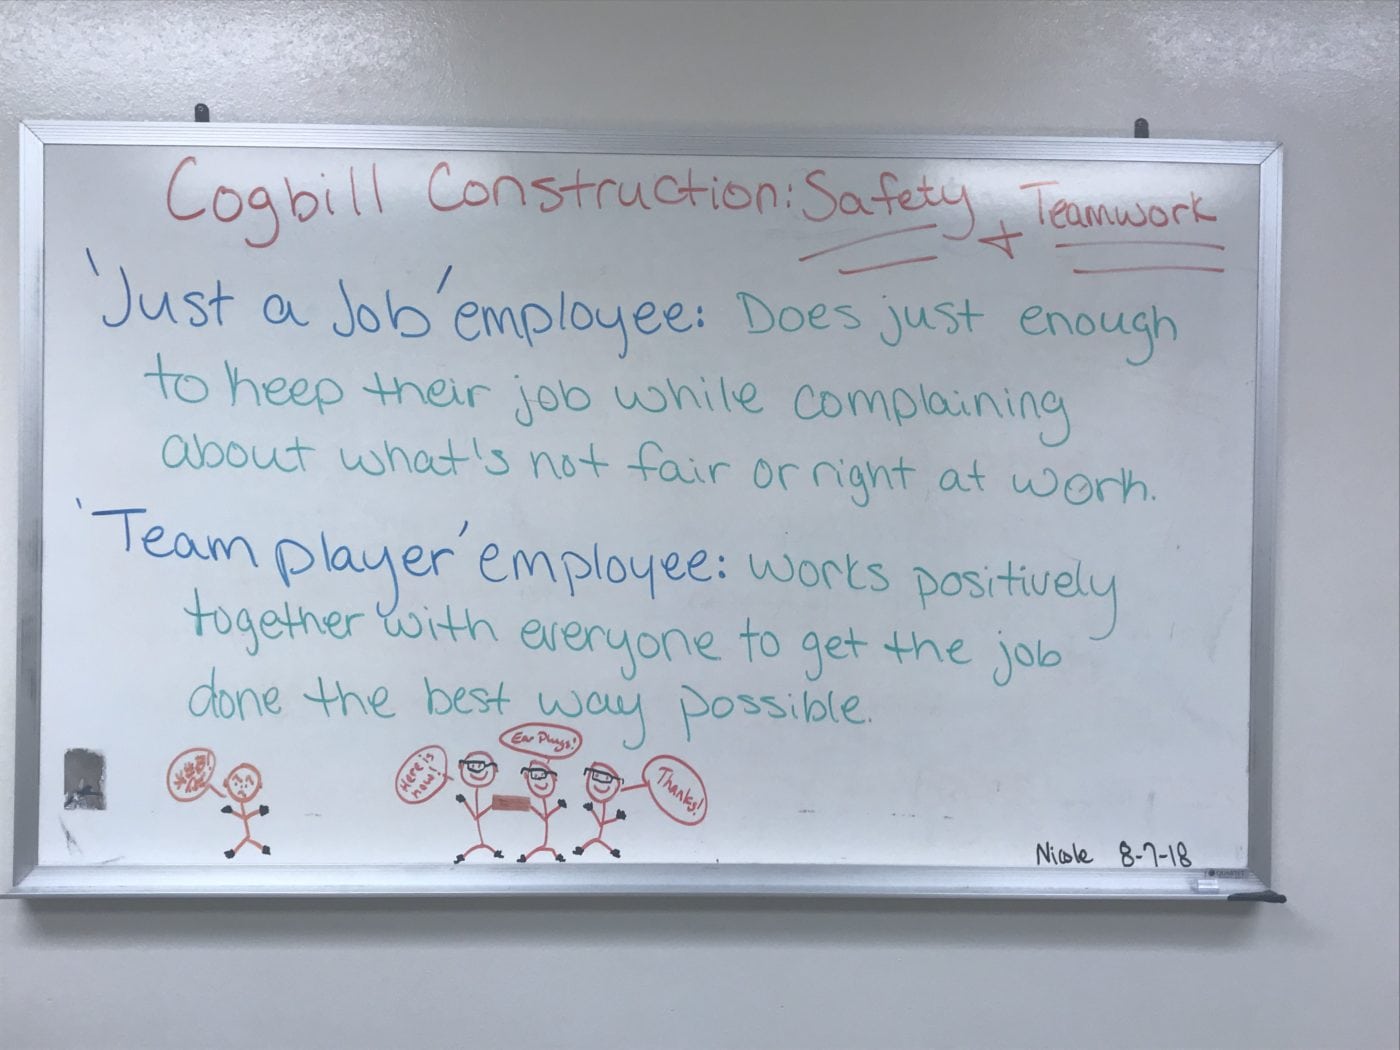 Teamwork Cogbill Construction